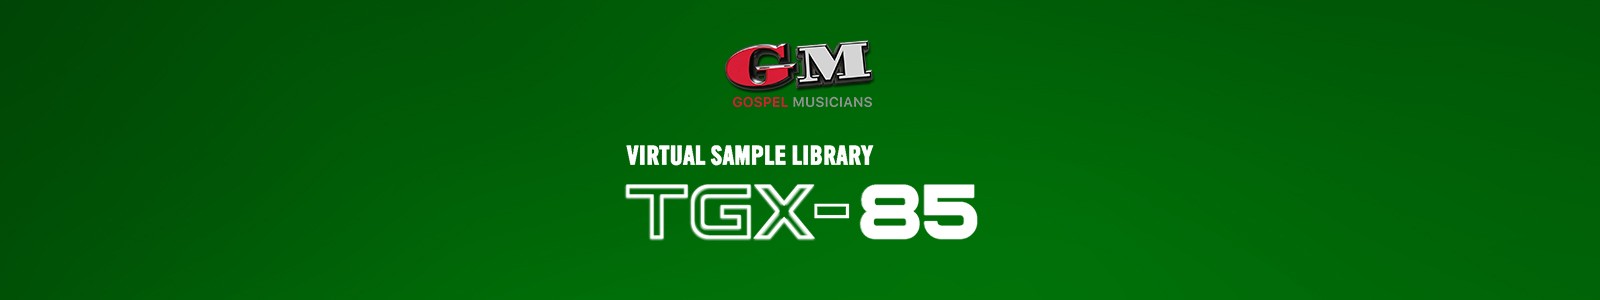 TGX 85 by Gospel Musicians